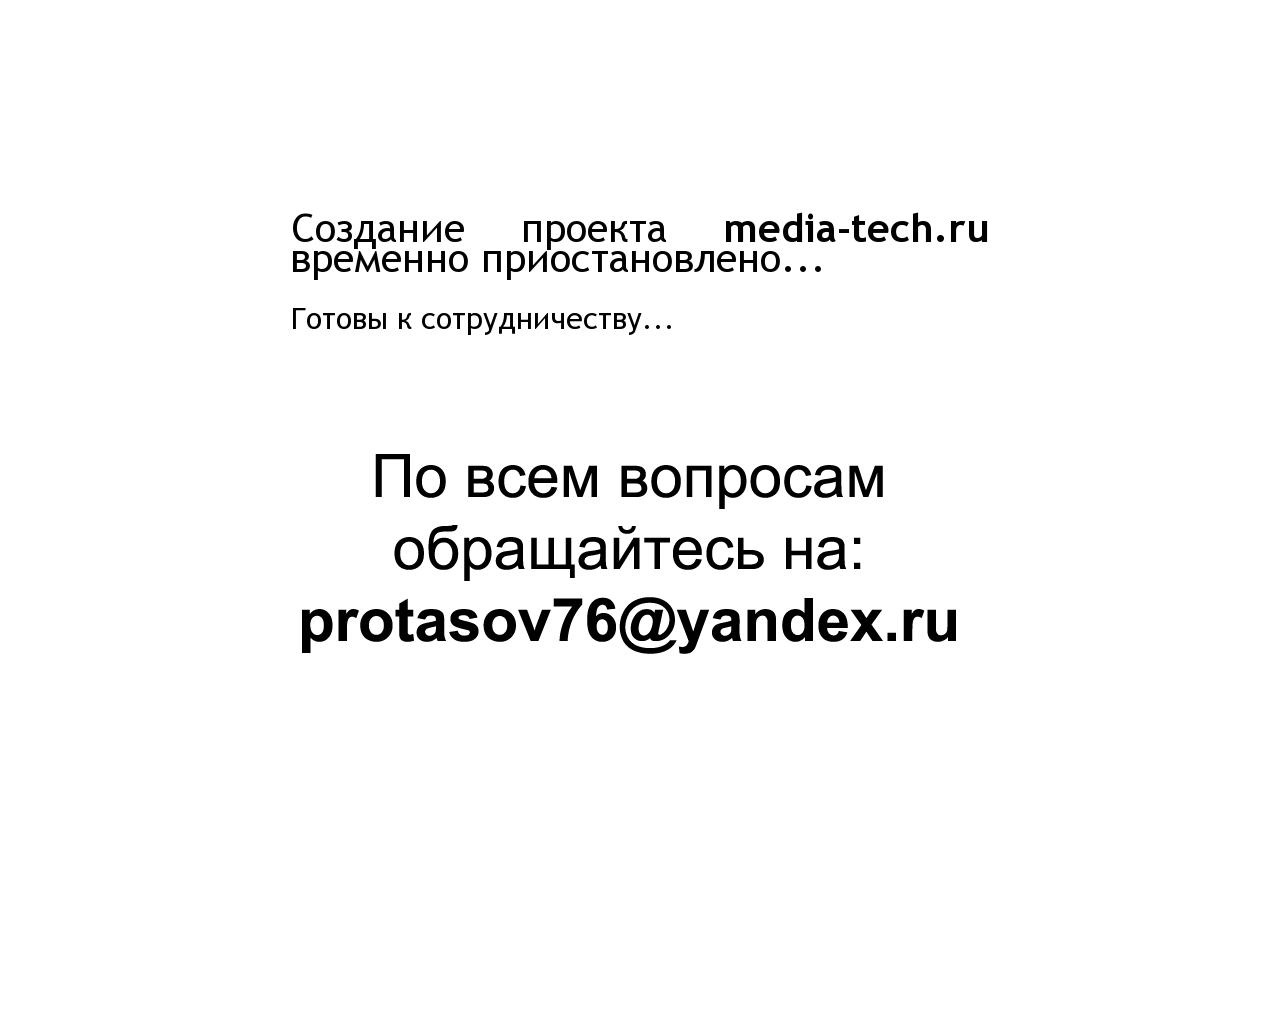 Изображение сайта media-tech.ru в разрешении 1280x1024